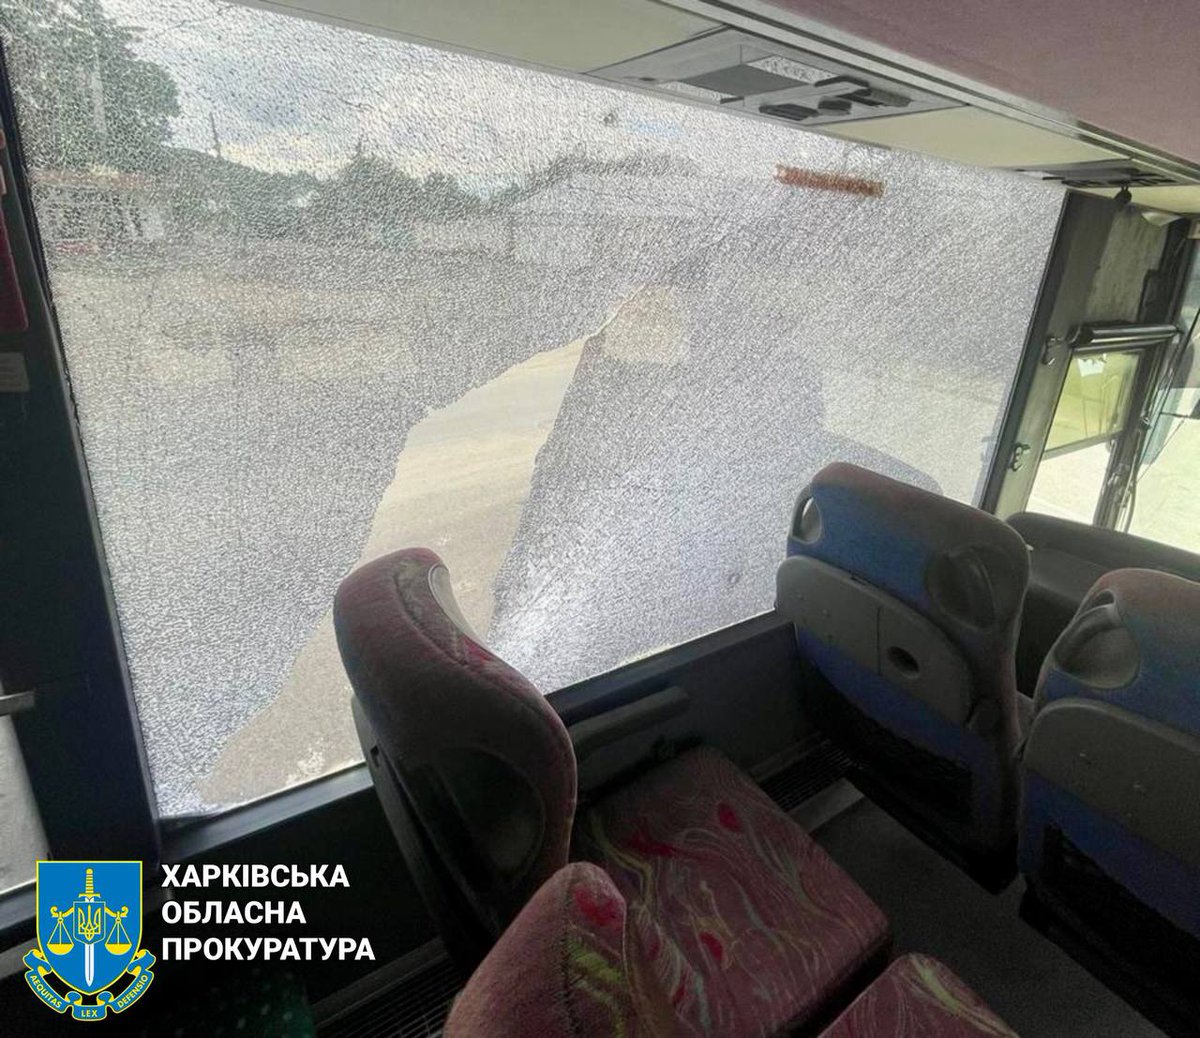 Vakar Kupjanskā bezpilota lidaparāta uzbrukumā ievainoti 3, tostarp 2 policisti